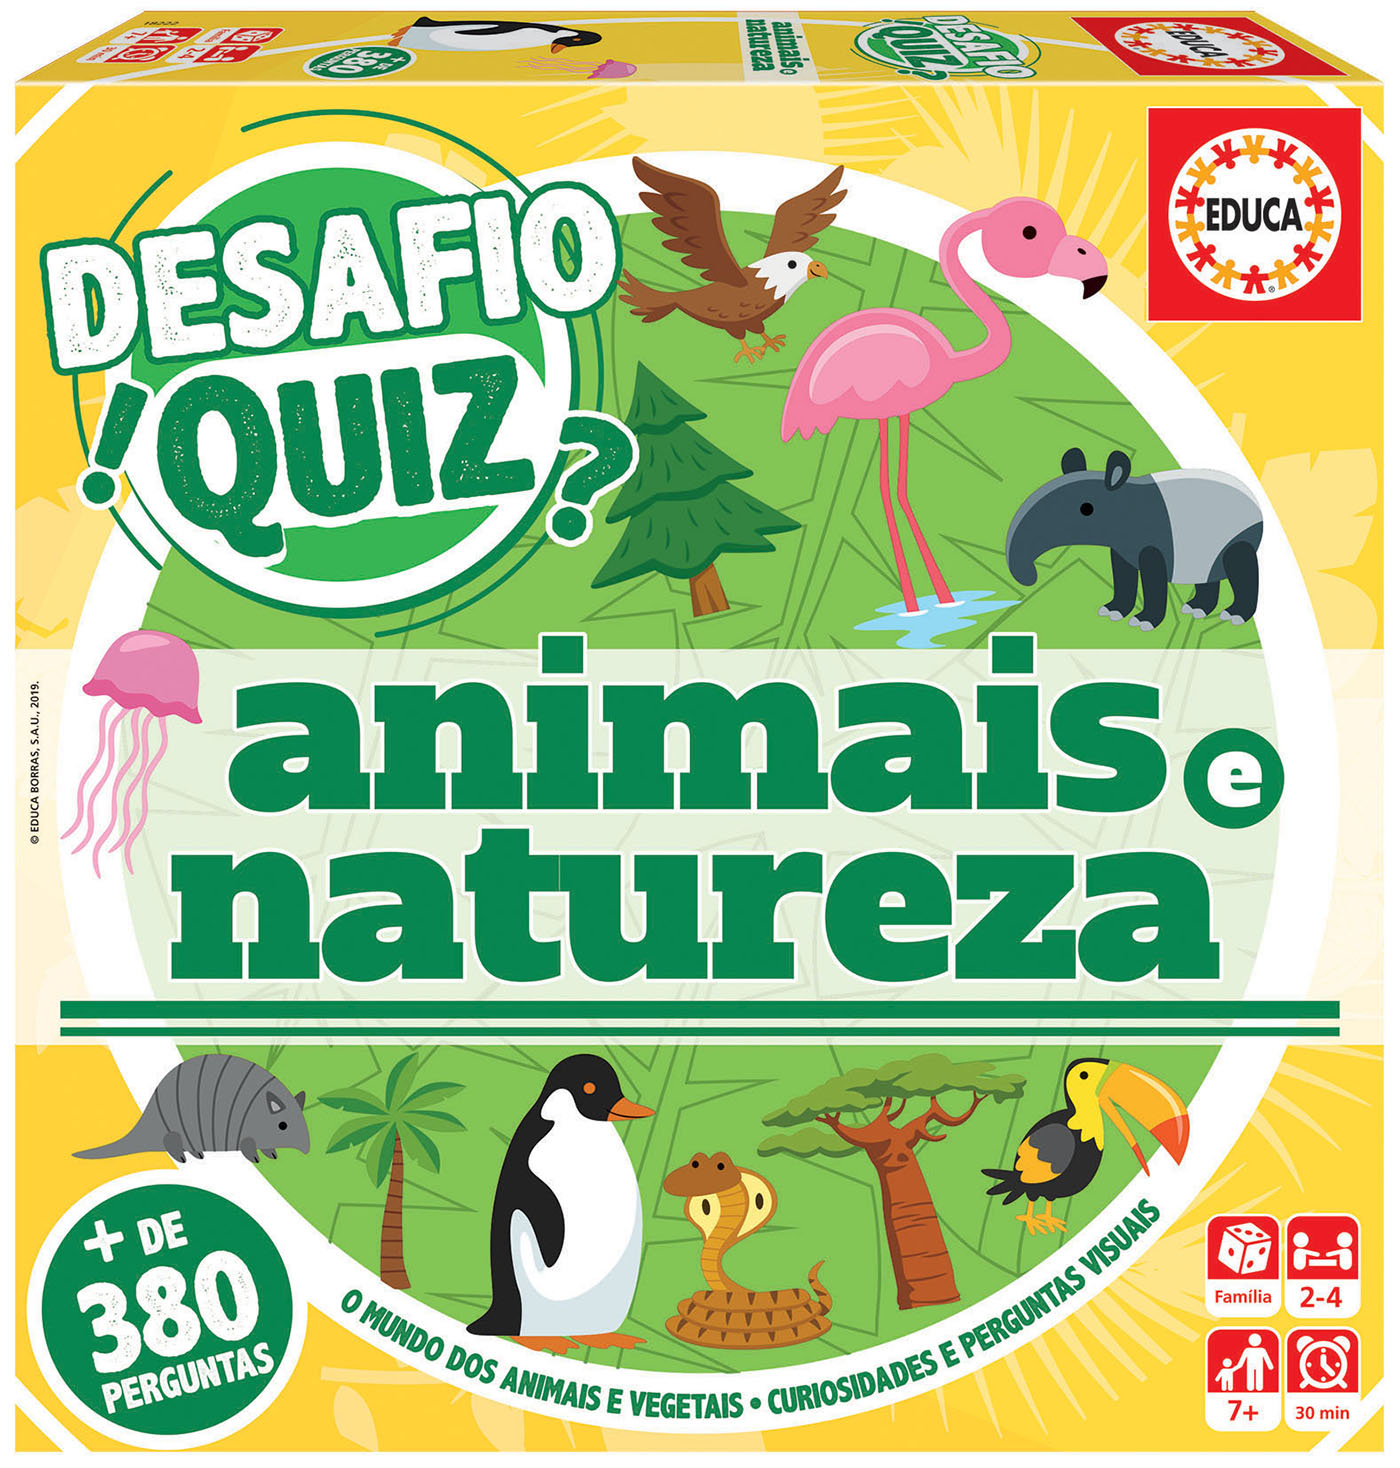 Perguntas e respostas sobre animais - Quiz animal #quiz #animais 